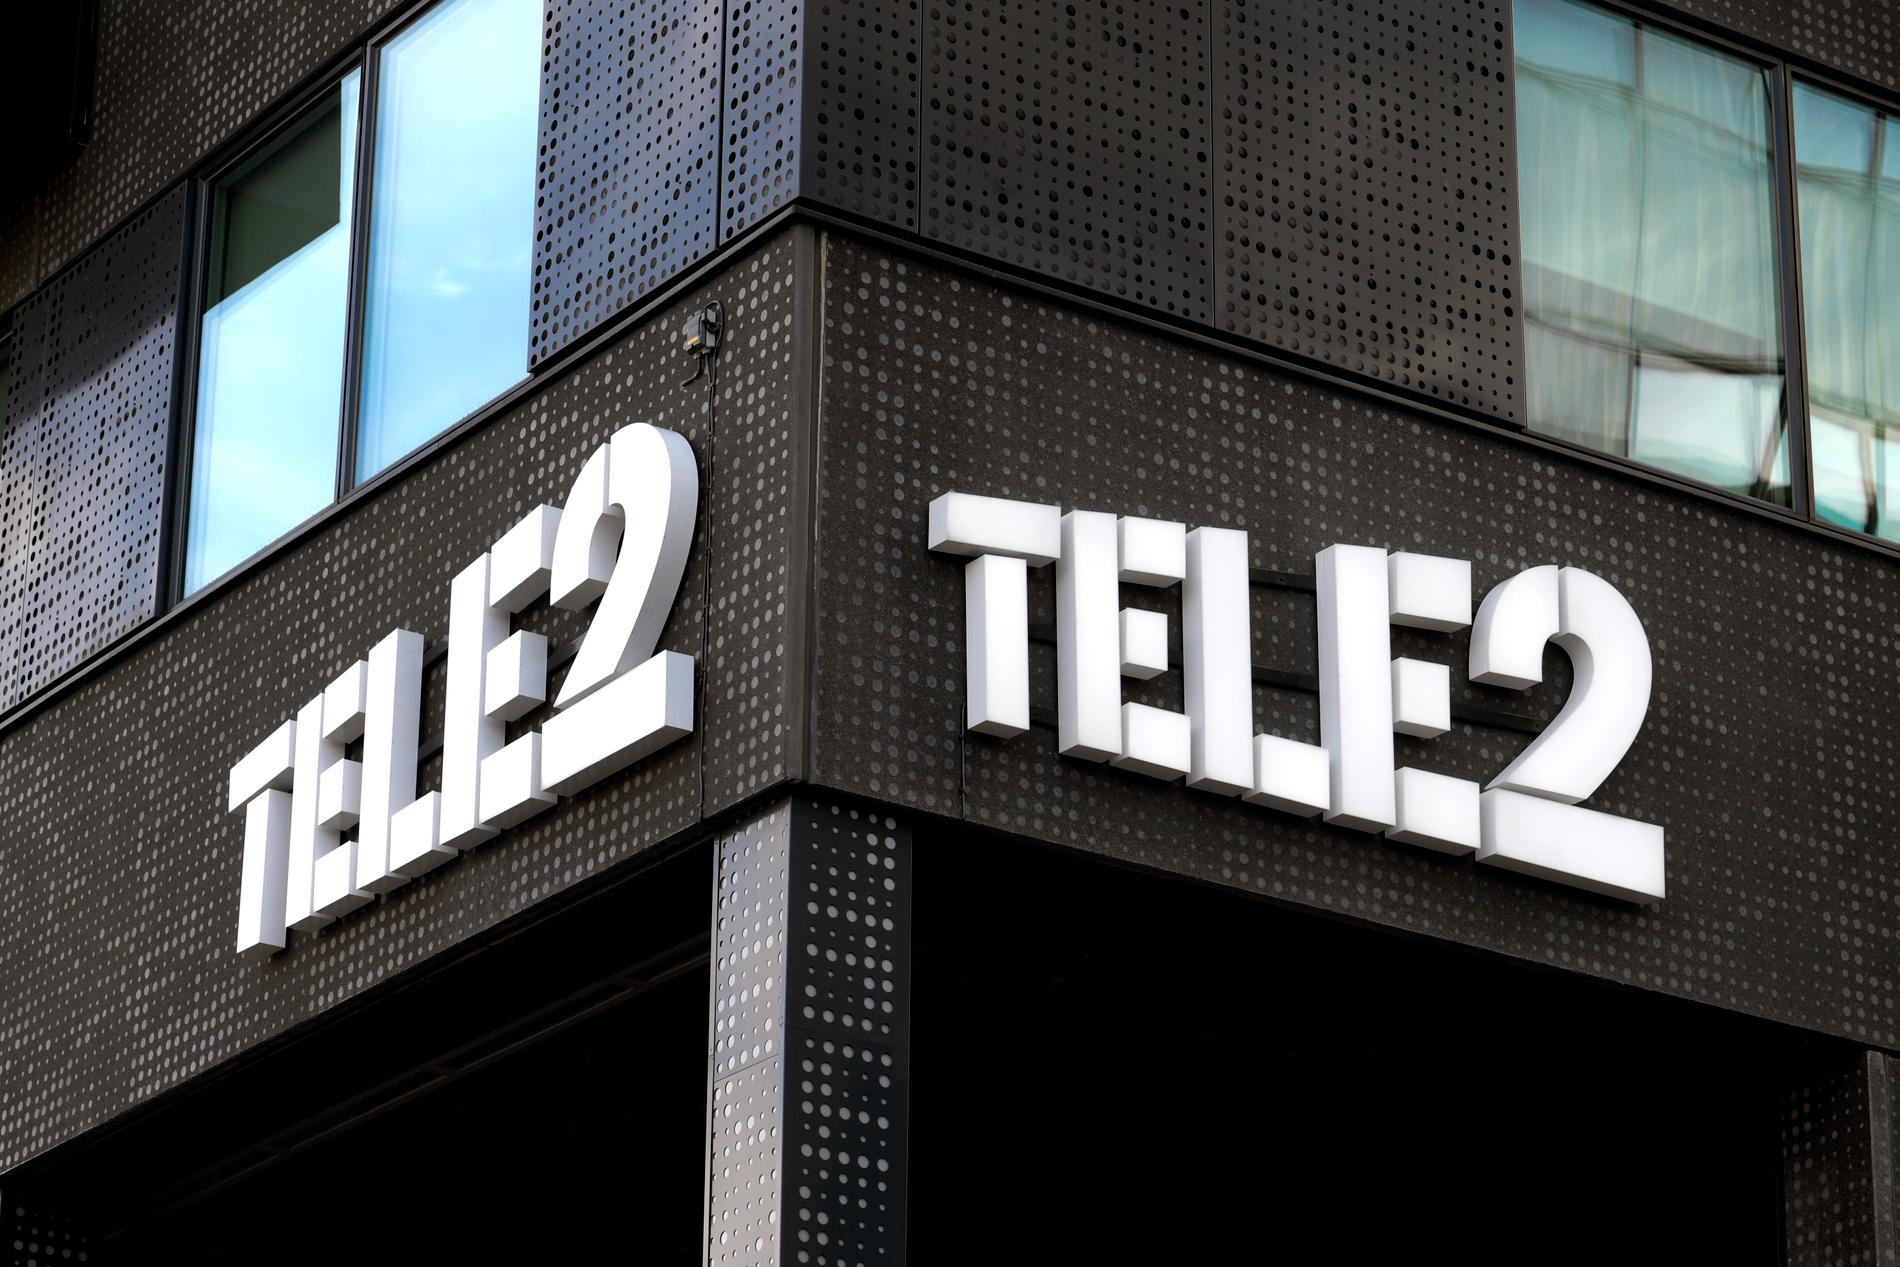 Tele2 drabbades av tekniska problem. Arkivbild.